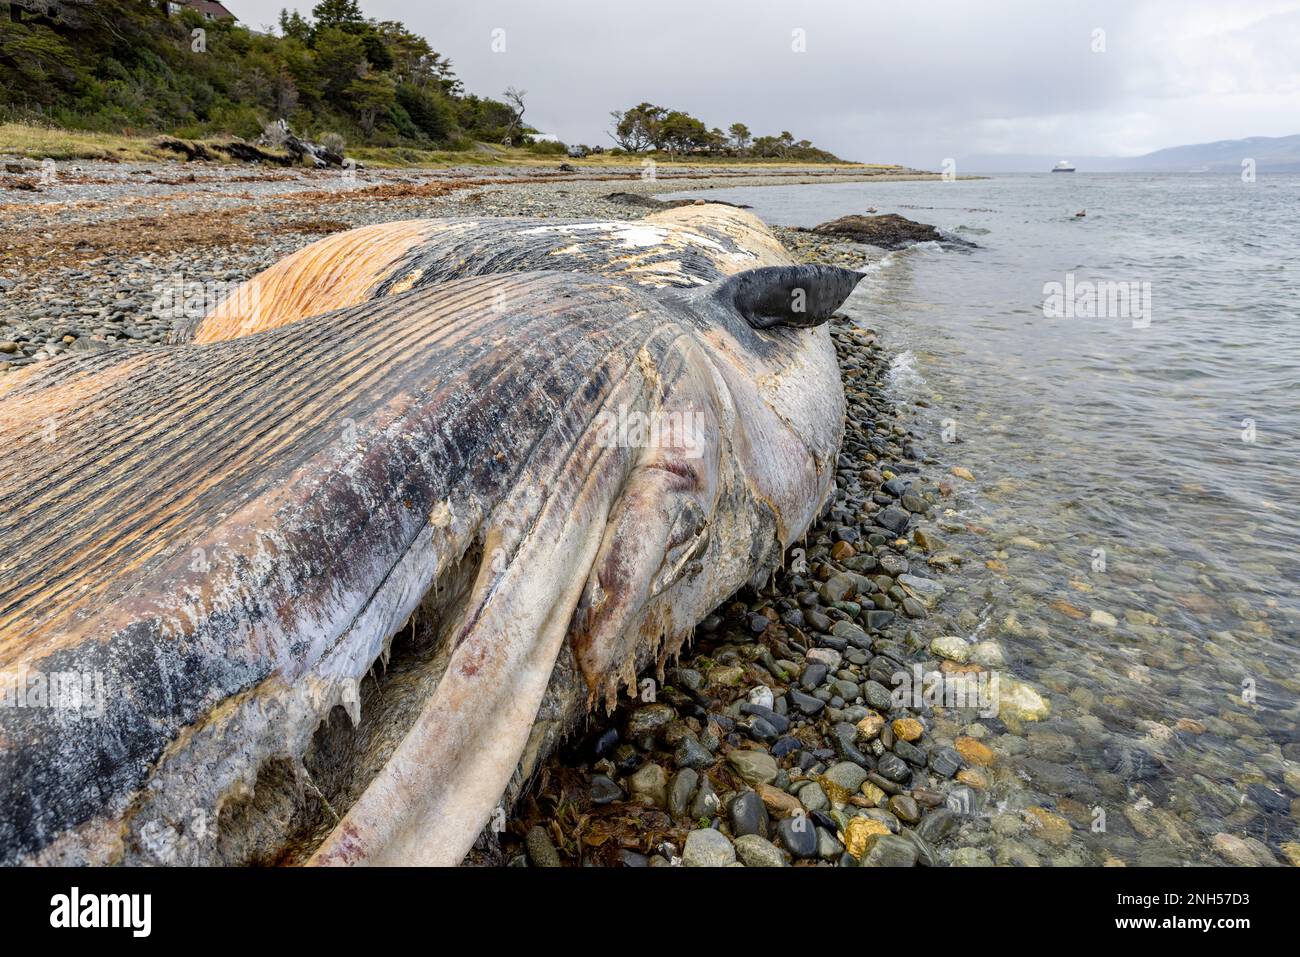 Toter Wal bei einem Unfall mit einem Boot auf einem steinigen Strand nahe Puerto Almanza, Ushuaia, Tierra del Fuego, Argentinien, Südamerika Stockfoto